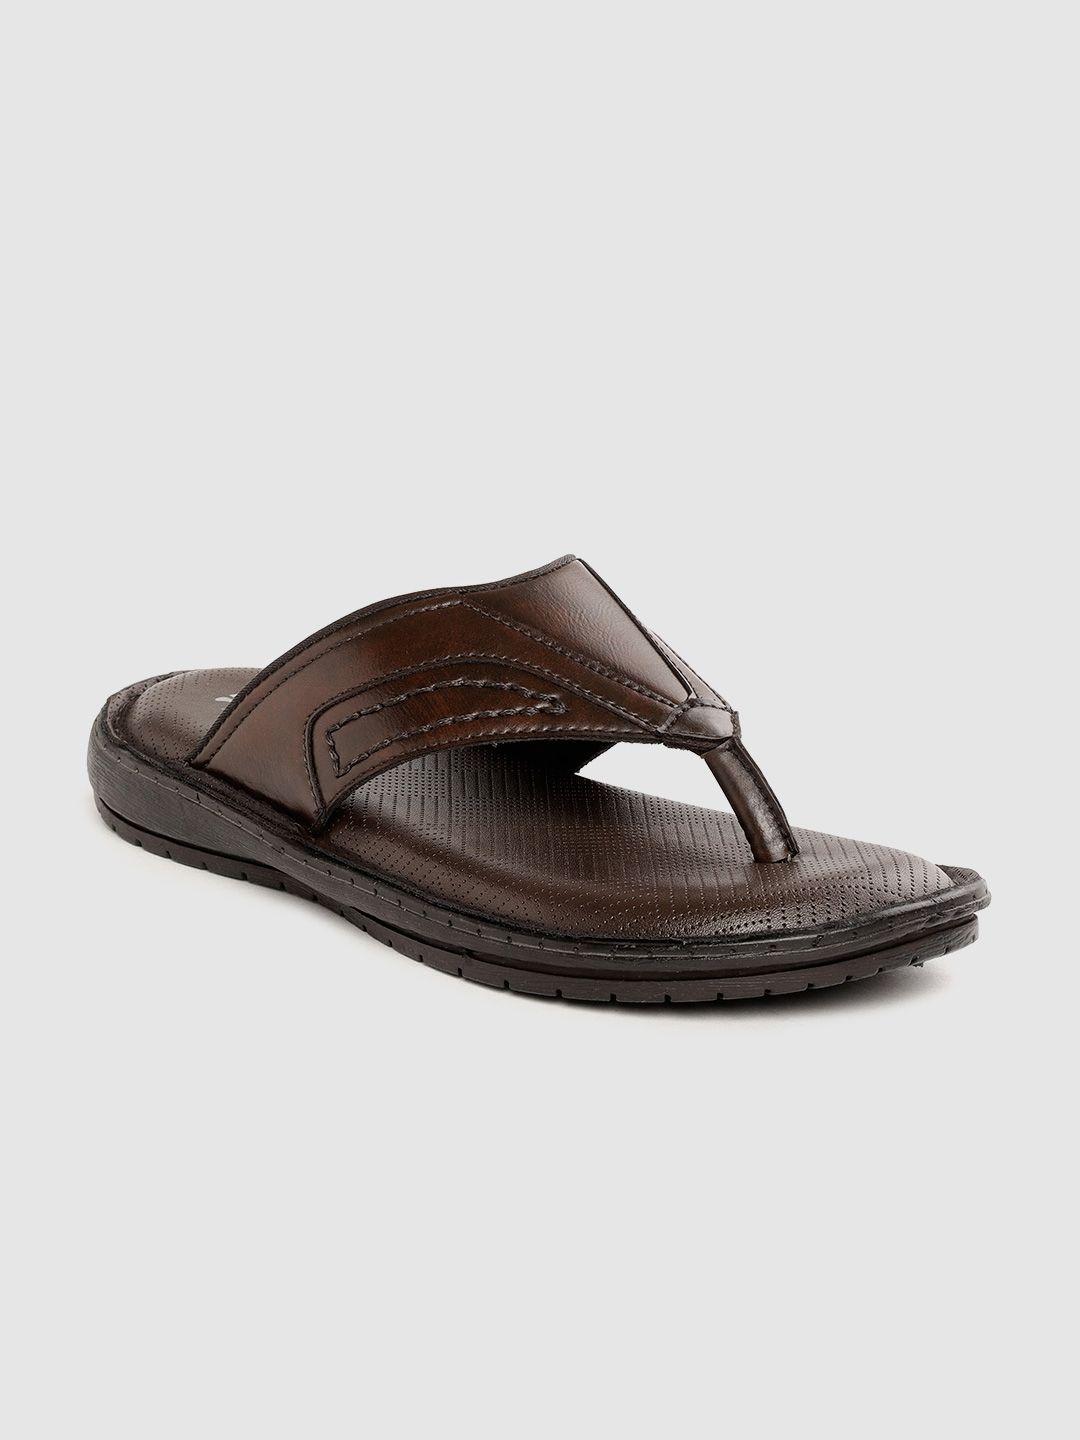 roadster-men-coffee-brown-solid-comfort-sandals